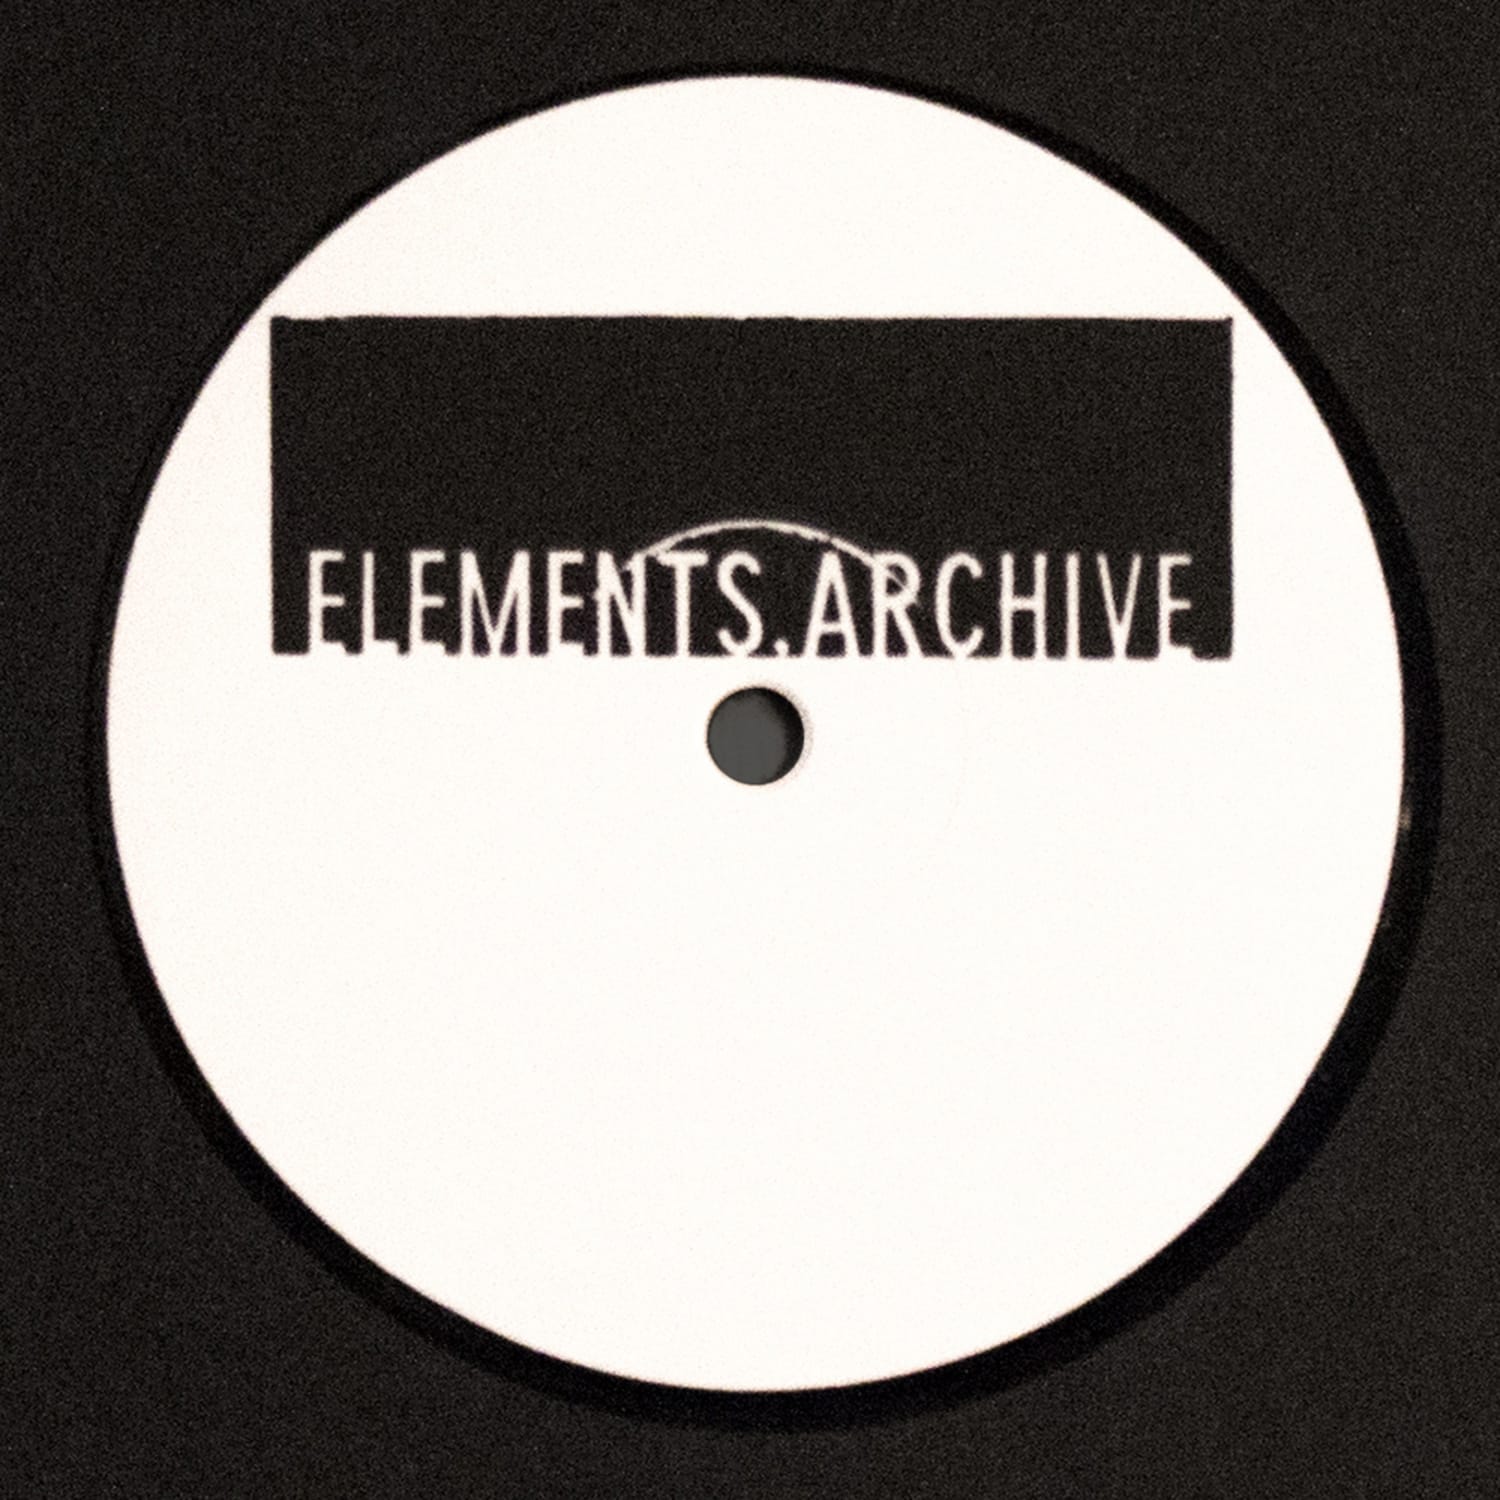 Elements.Archive - ELEMENTS.ARCHIVE 001 